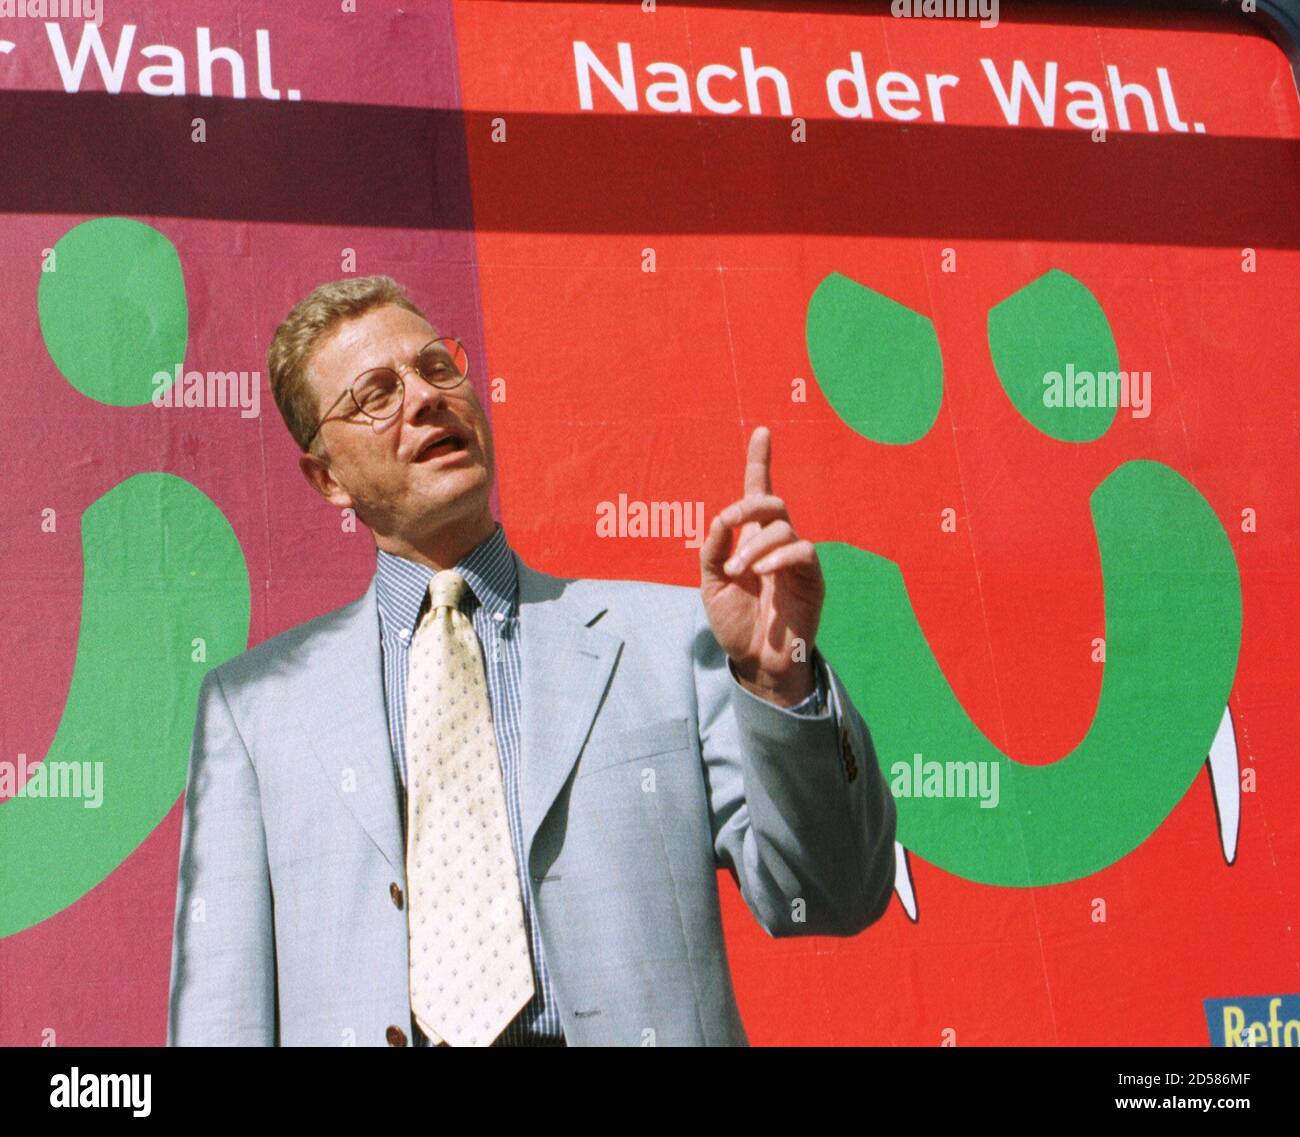 Guido Westerwelle, Generalsekretär der freien Liberalen Partei FDP deutet auf eine neue Wahl-Kampagne-Plakat in Bonn Juni 8. Die FDP' s neue Plakat ist eine Karikatur von einem Wahlplakat der grünen Partei zeigen ein lächelndes Gesicht mit Dracula Zähne und liest "nach den Wahlen" ("Nach der Wahl"). Deutschland wählt einen neuen Kanzler in den allgemeinen Wahlen im September 27. Stockfoto